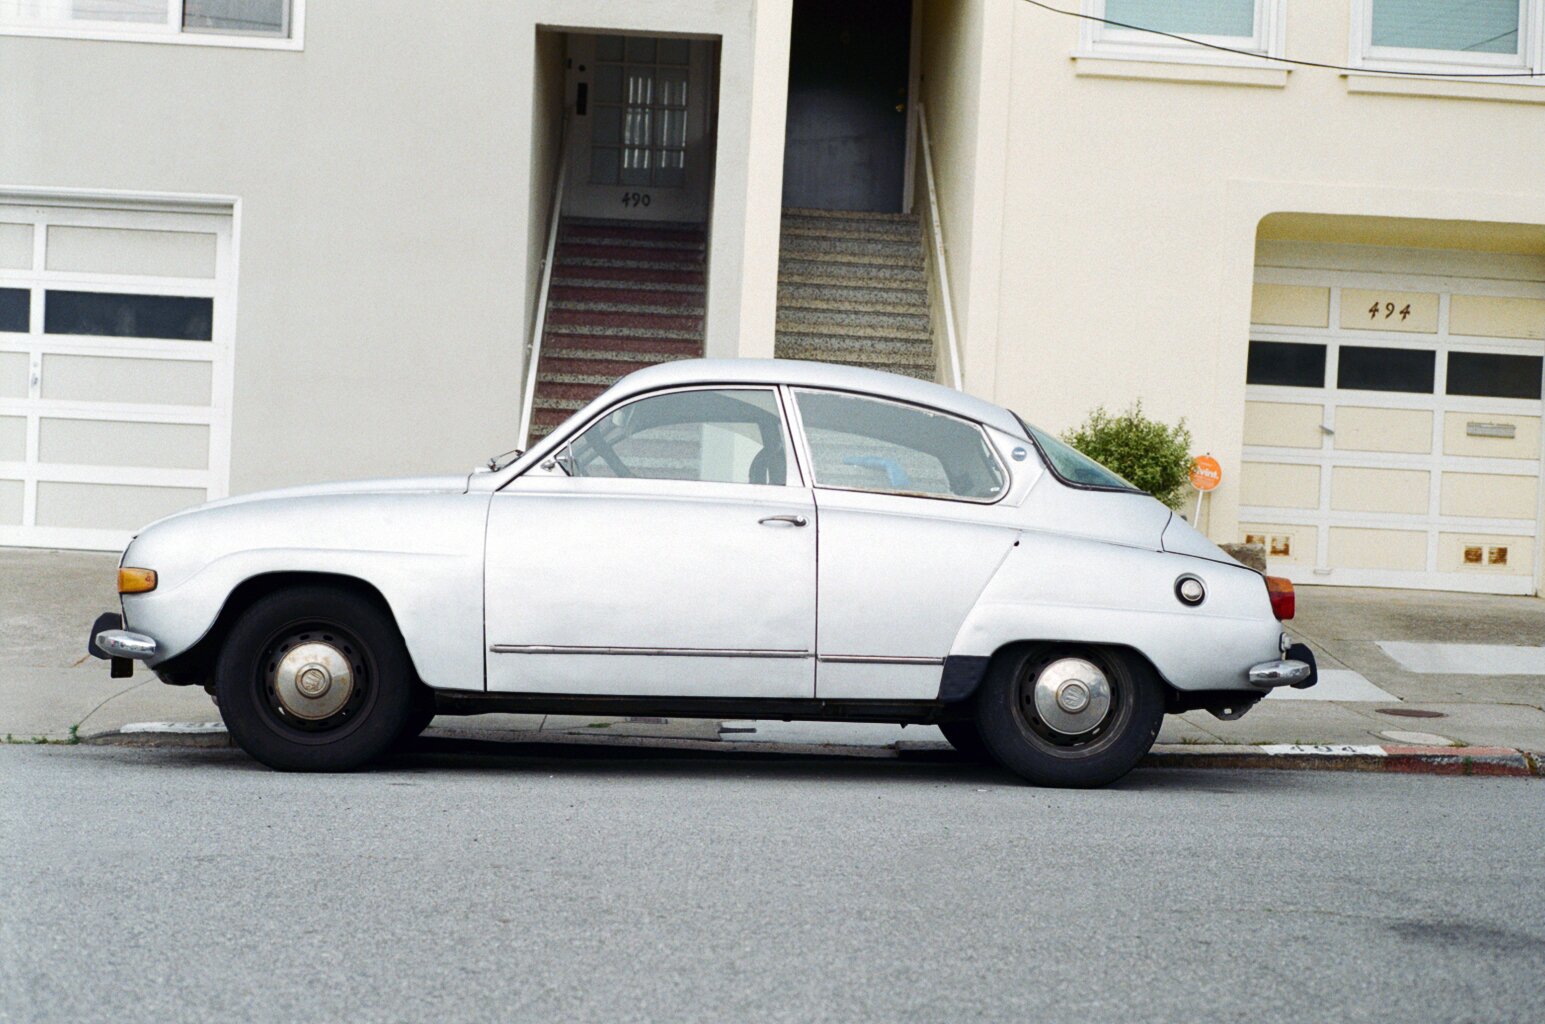  Old Saab in San Francisco - USA 